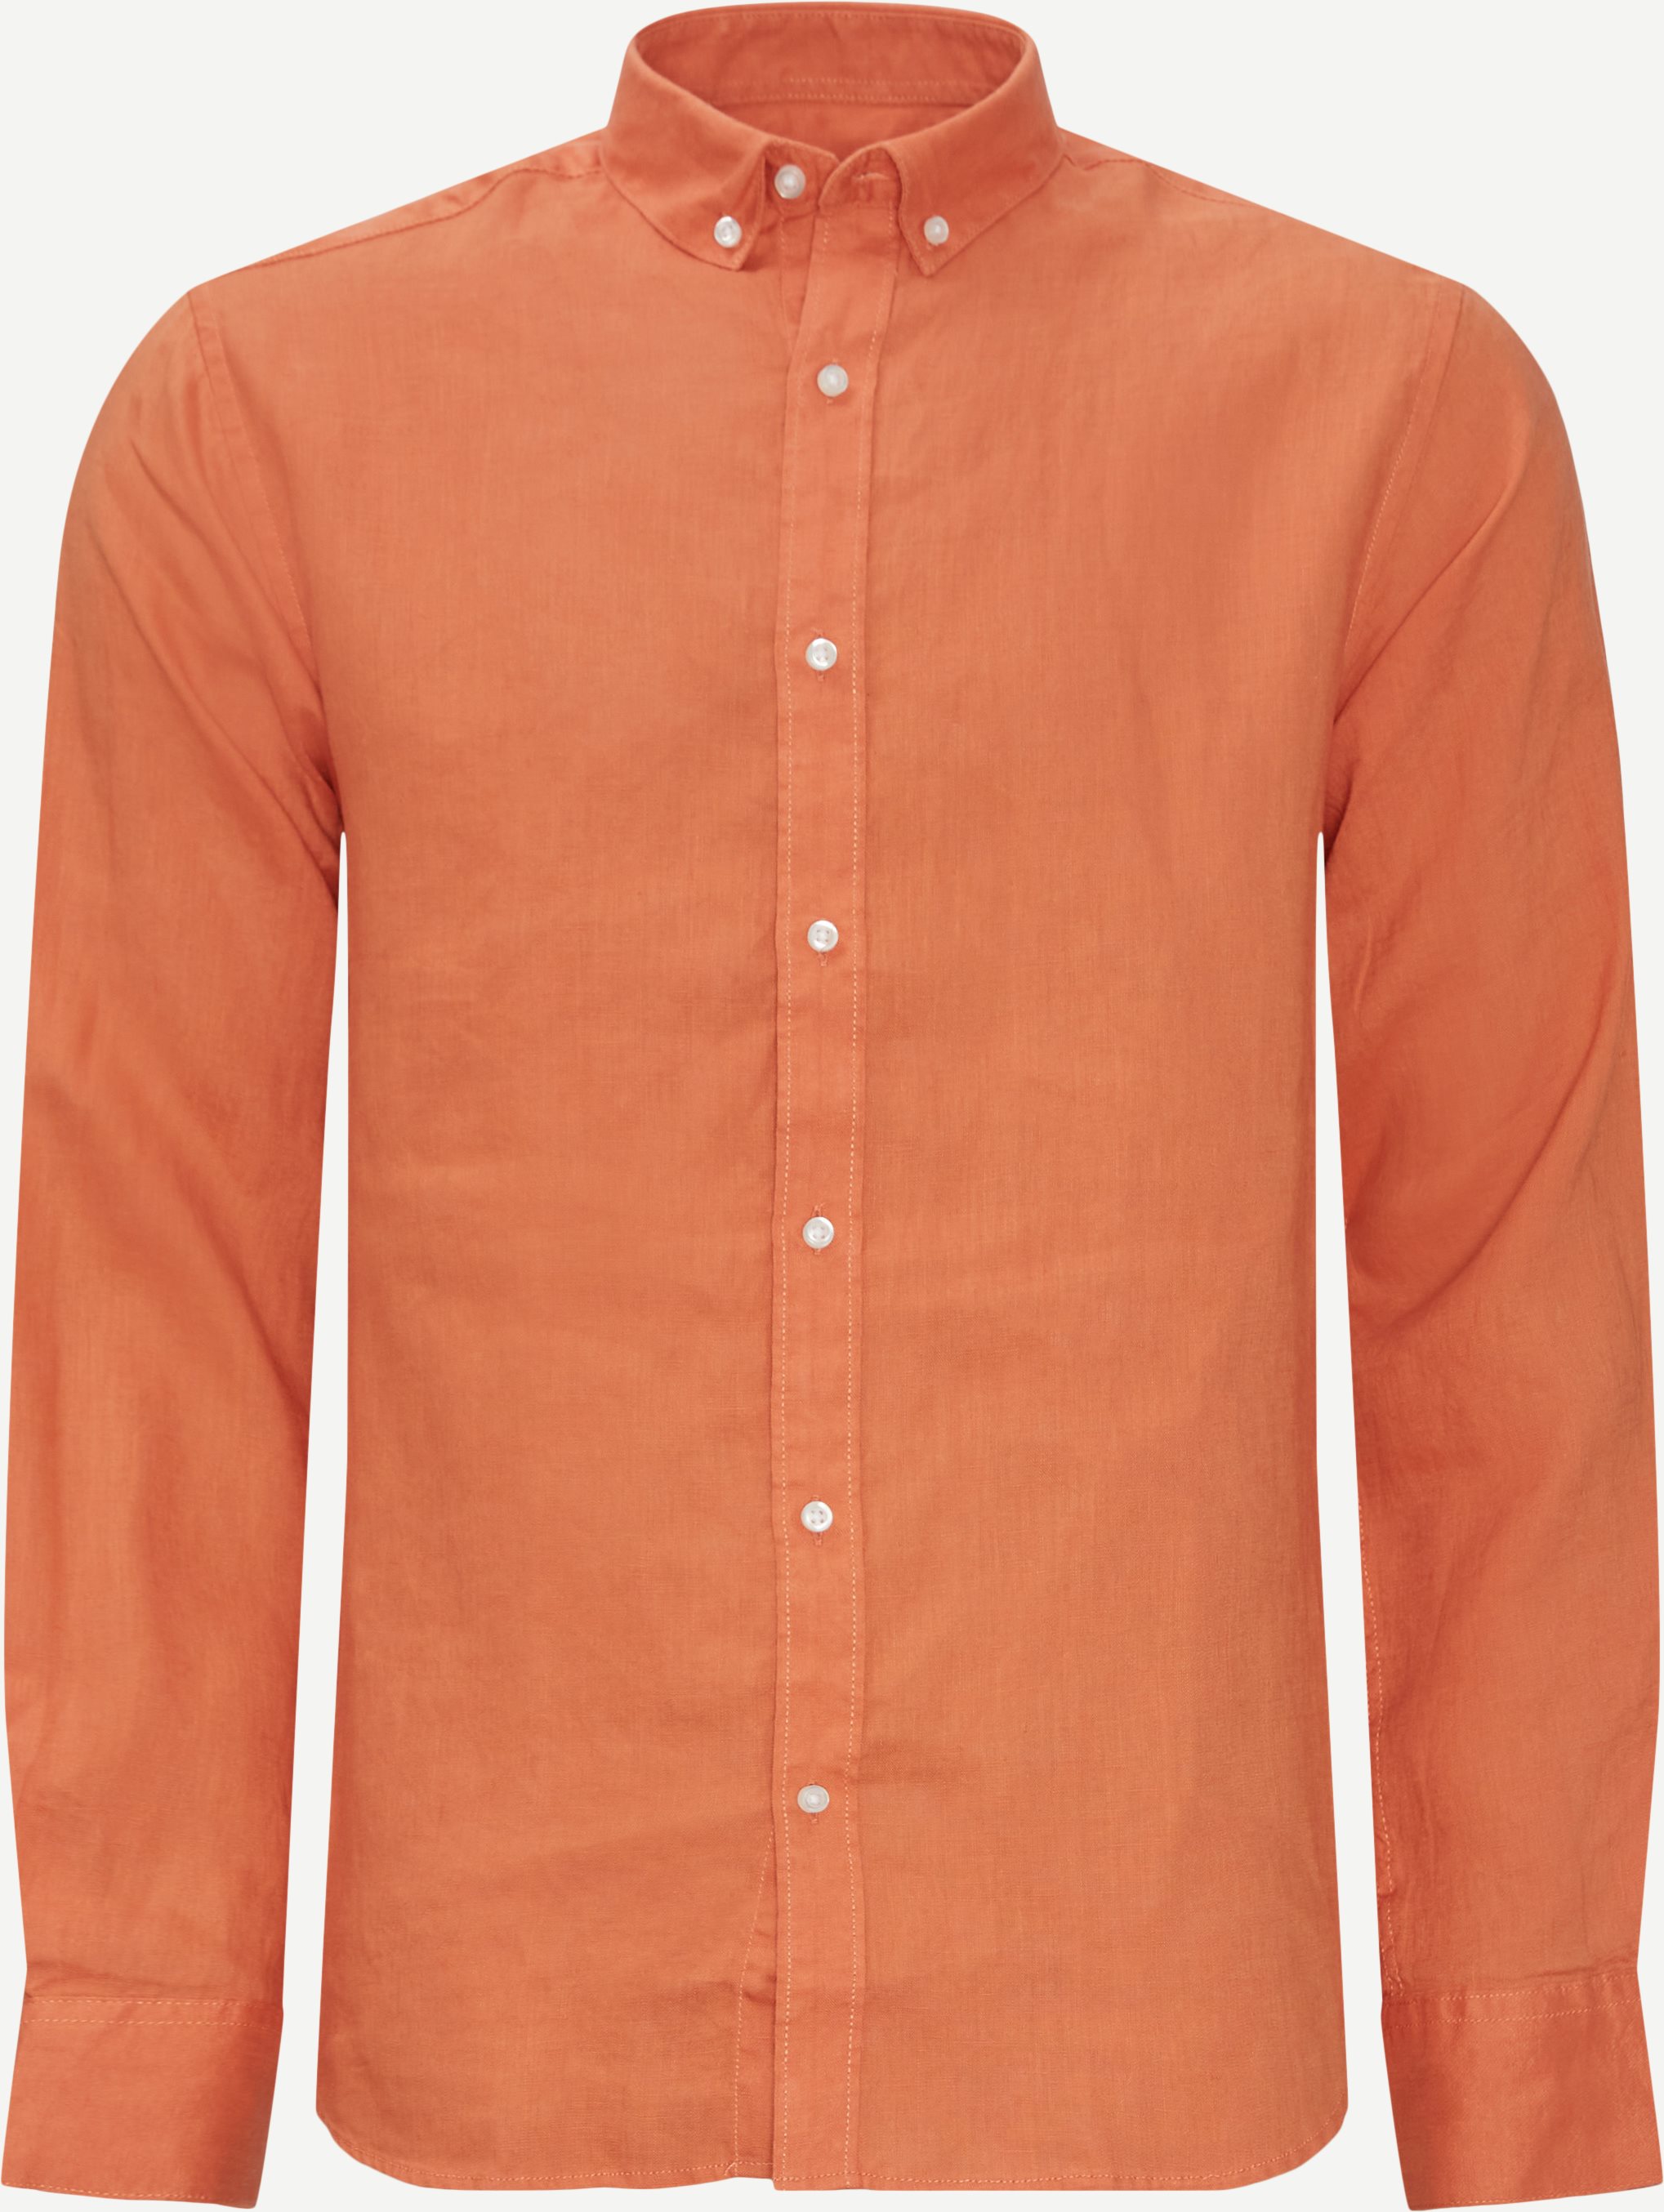 Shirts - Slim fit - Orange